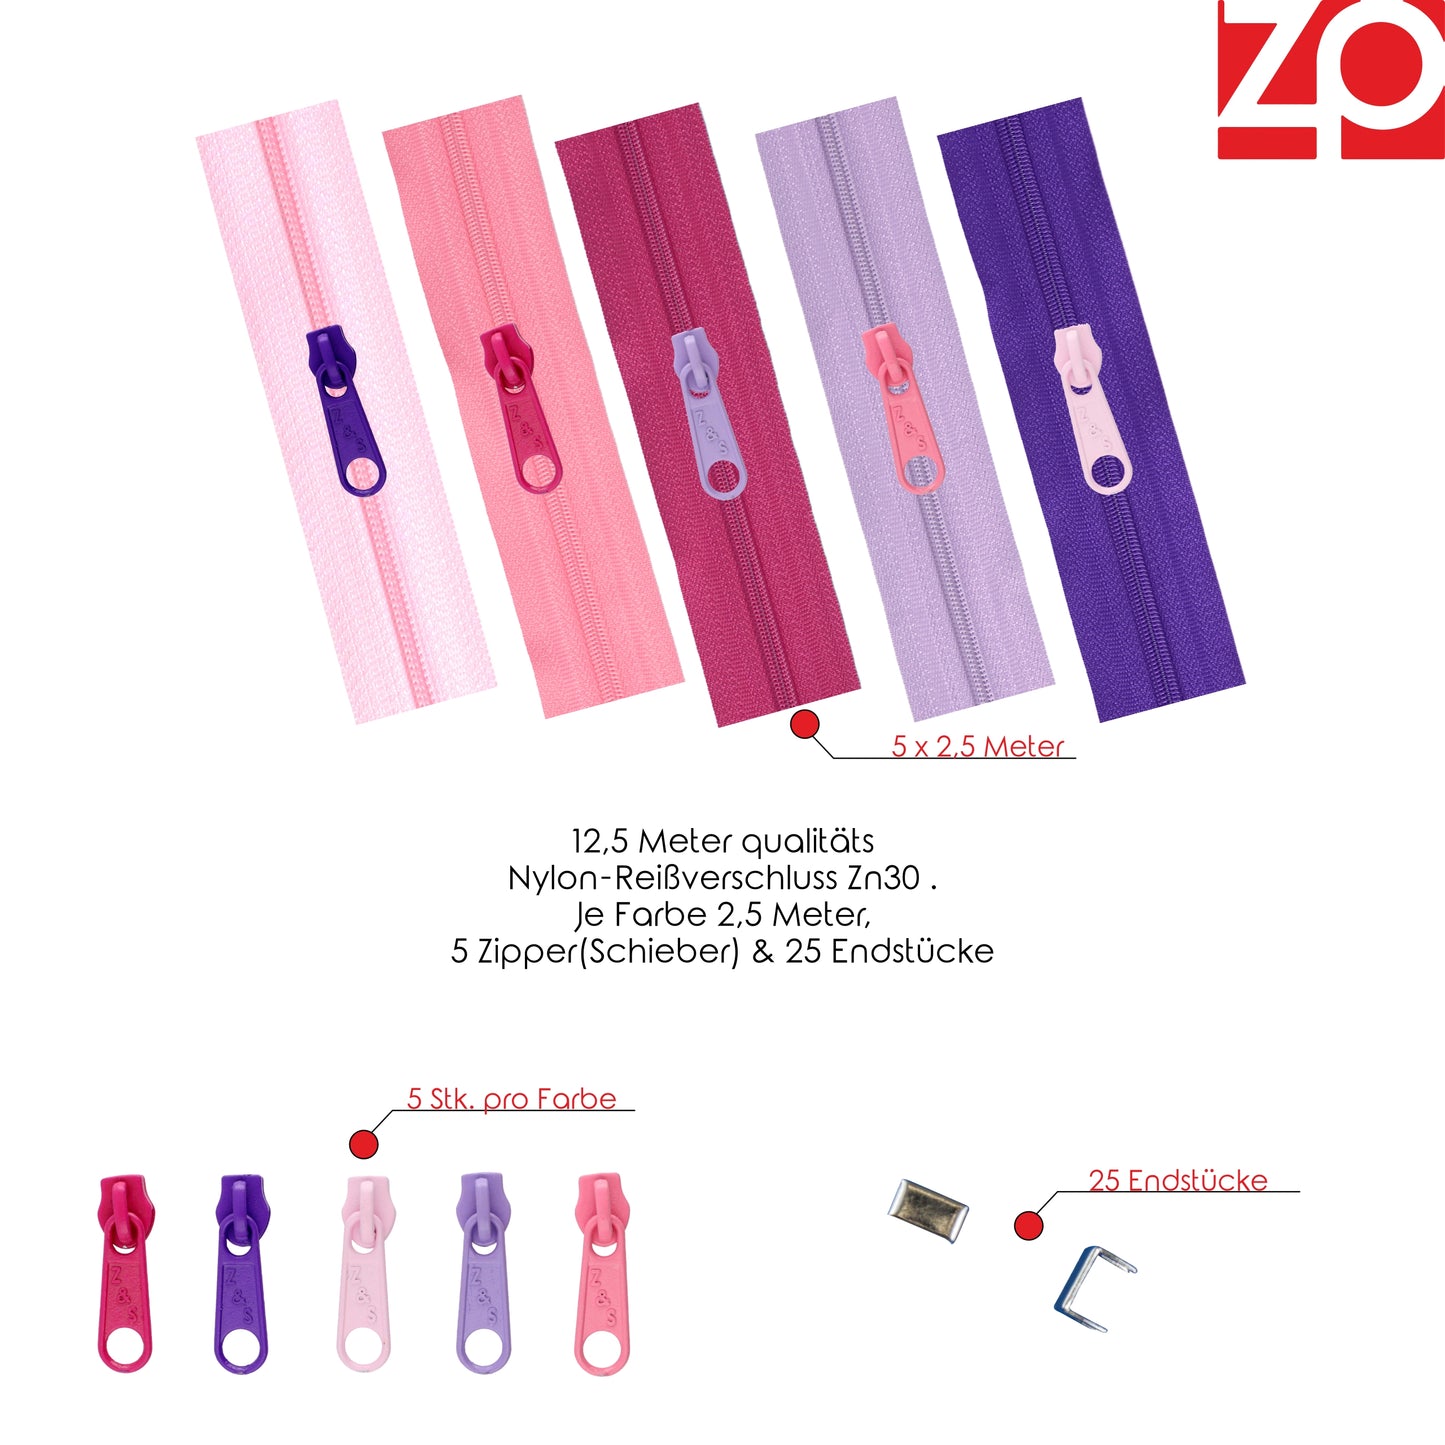 ZIPP AND SLIDE - Endlos Reißverschluss Set mit Zipper 3mm 12,5 Meter - nickelfrei - Farbsetnr. 10 Das Original